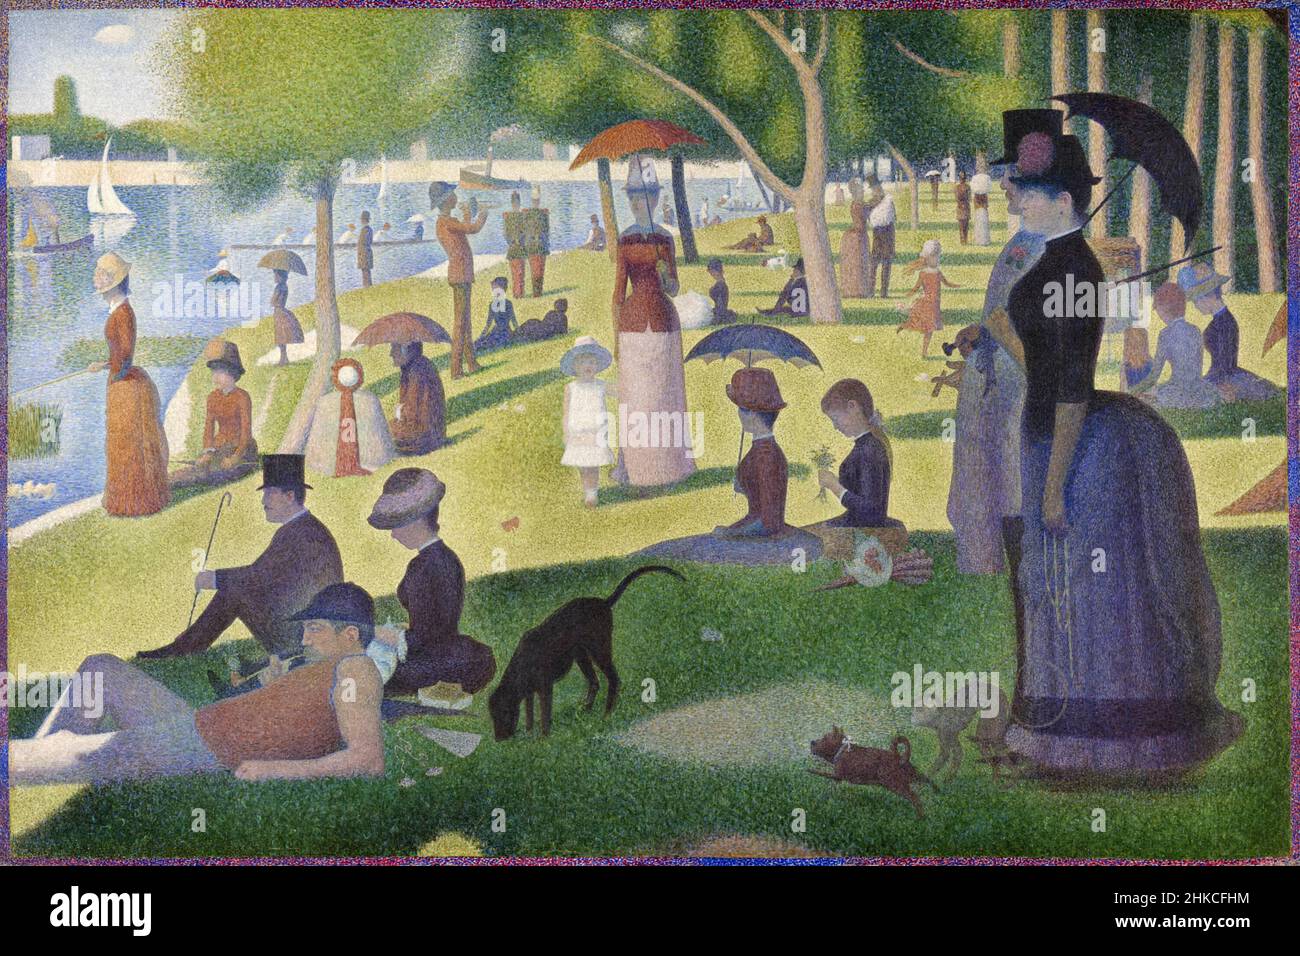 Una domenica pomeriggio sull'isola di la Grande Jatte [un dimanche après-midi à l'Île de la Grande Jatte] di Georges Seurat (1859-1891) dipinse il 1884-86 con la sua pointillist o tecnica neoimpressionista. Foto Stock